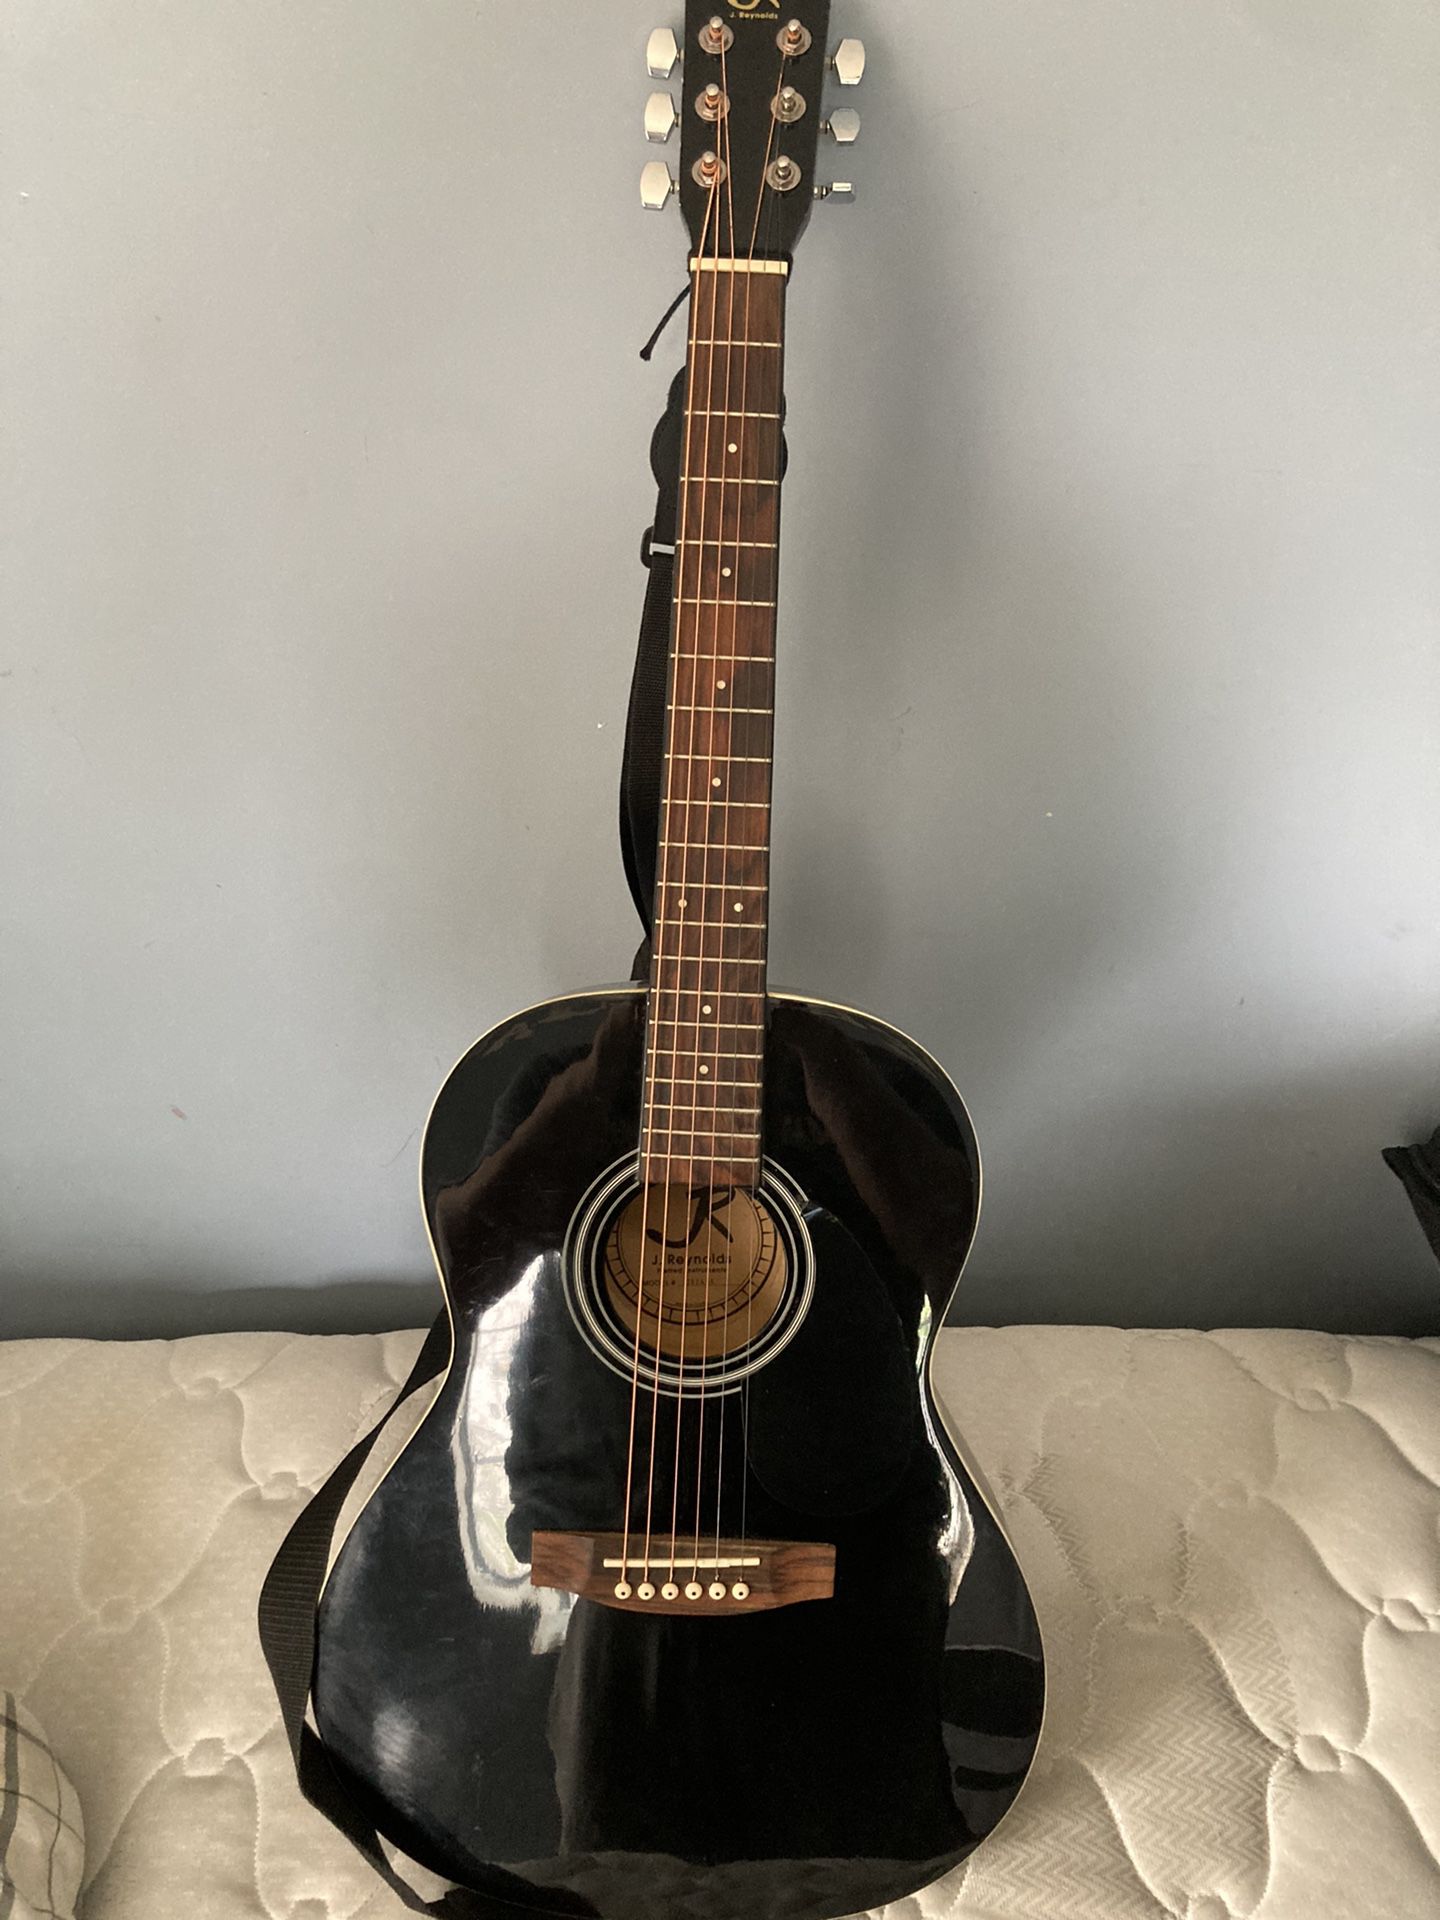 j. reynolds’s guitar with bag . Black original strings and belt 